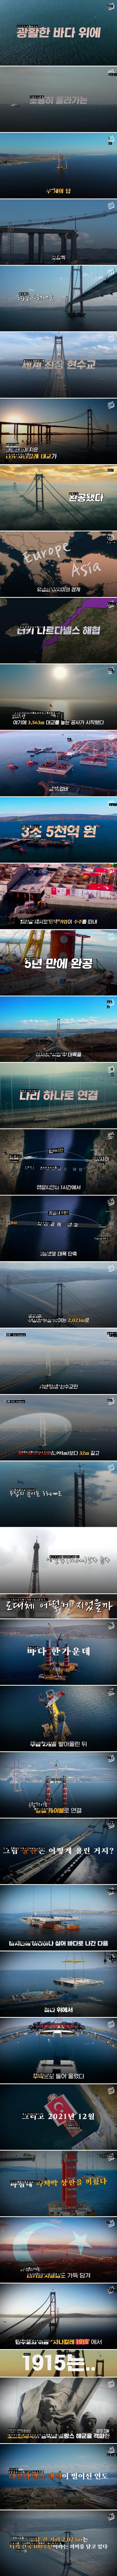 ●世界最長の吊り橋が完成した韓国の狂った技術力